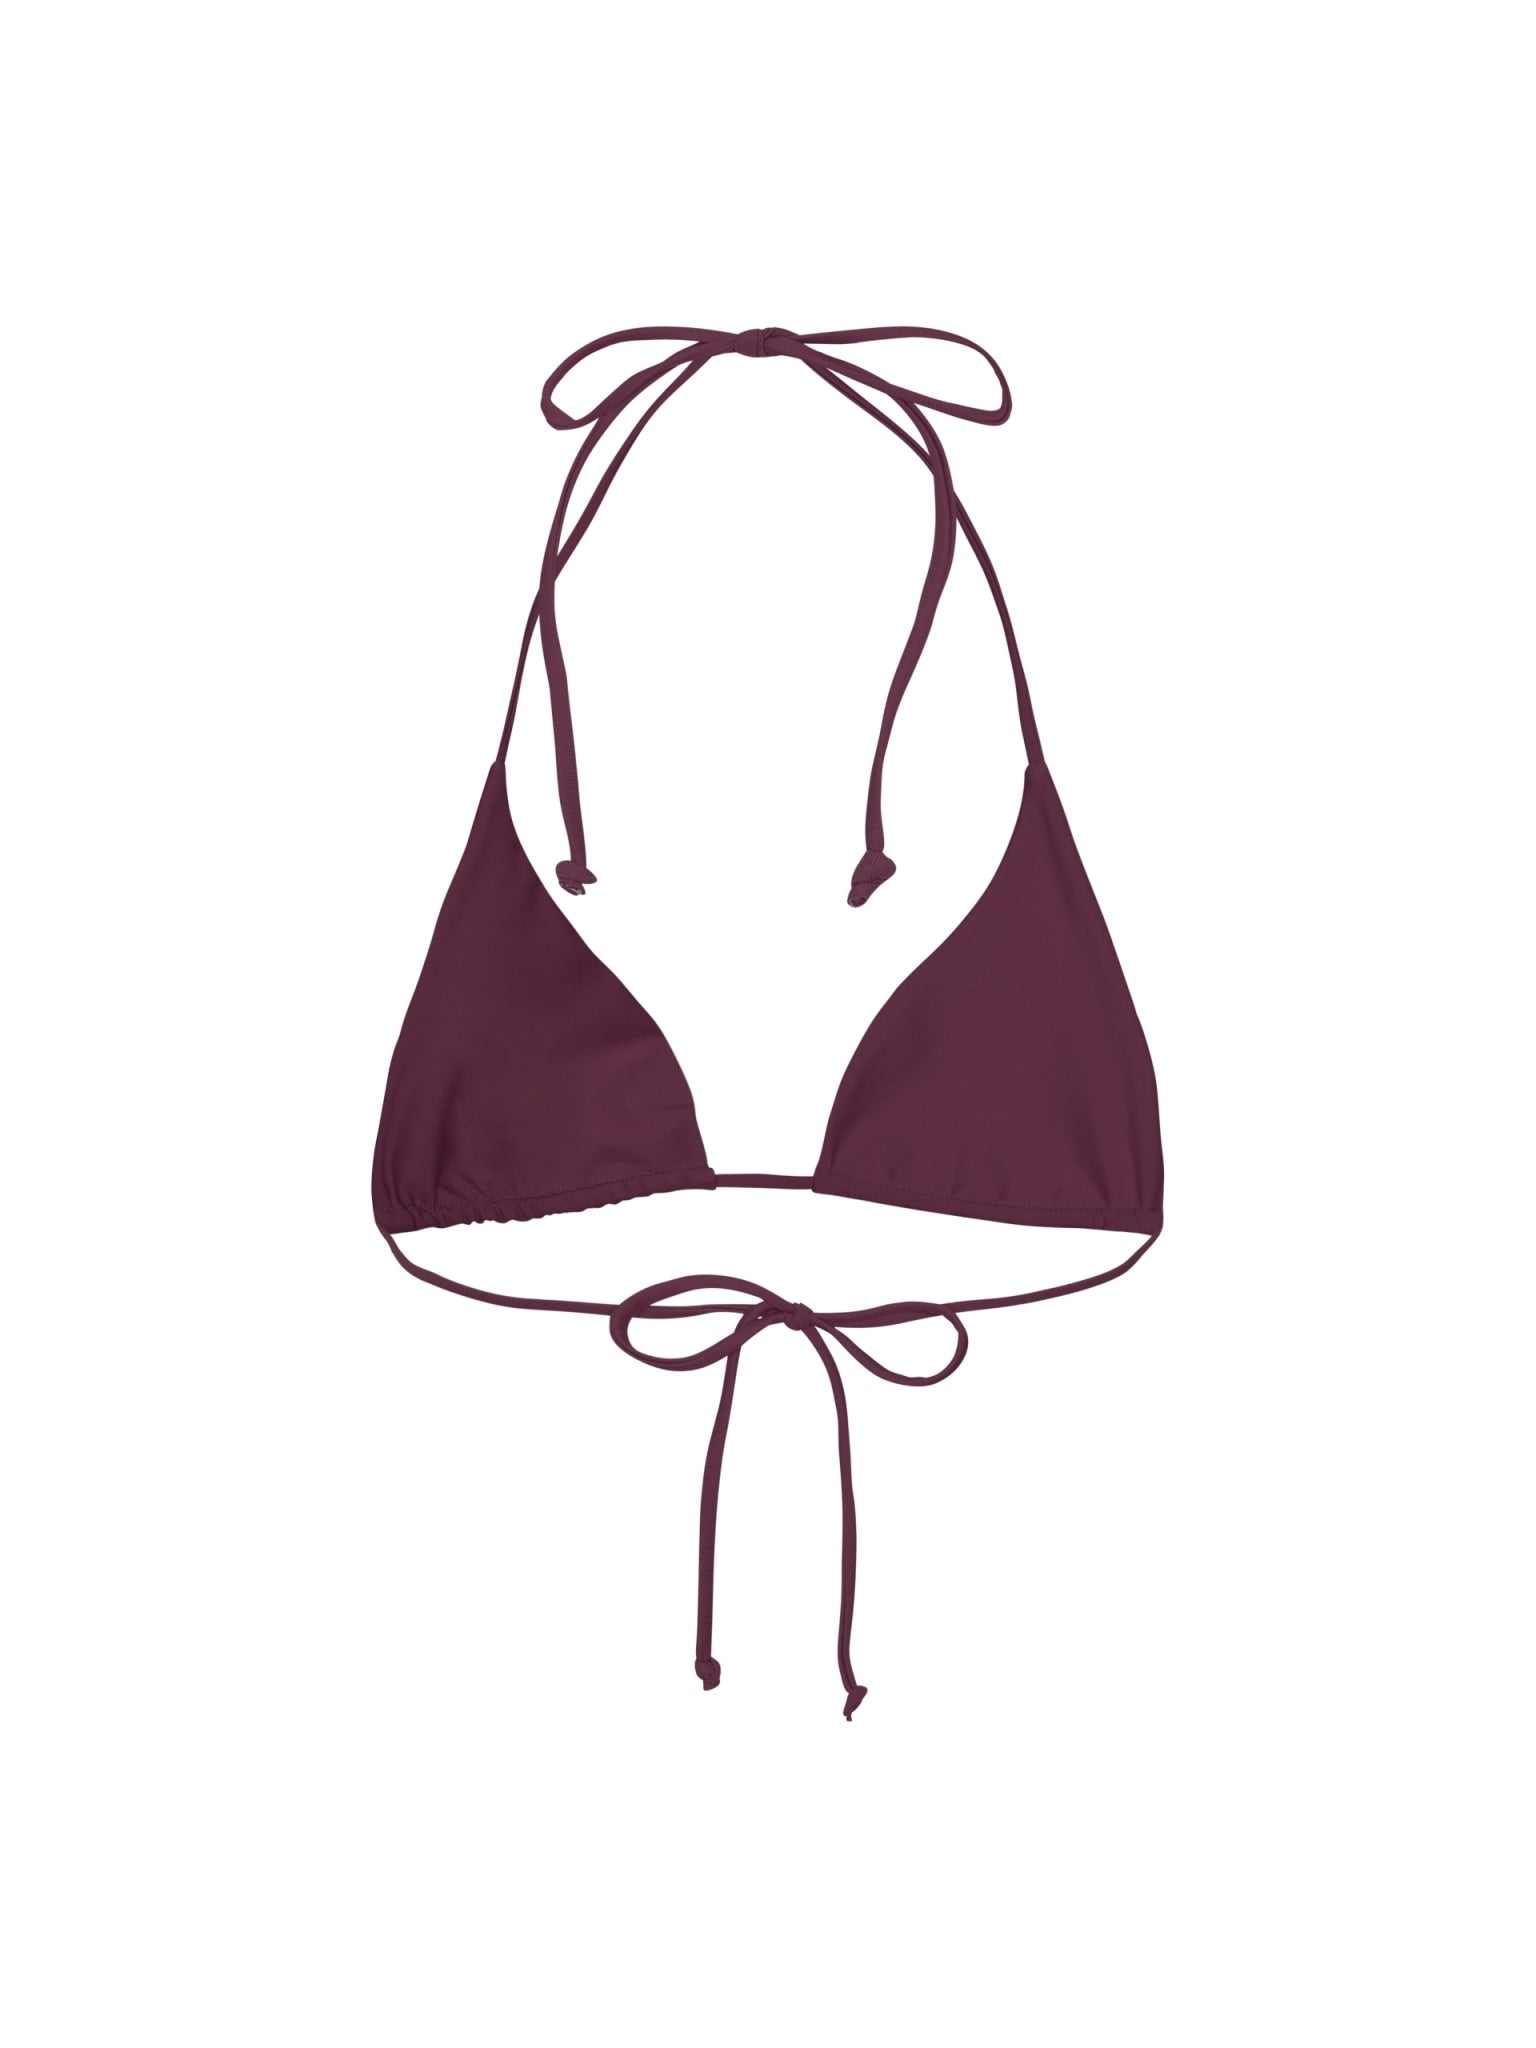 Uluwatu triangle bikini top - Deep